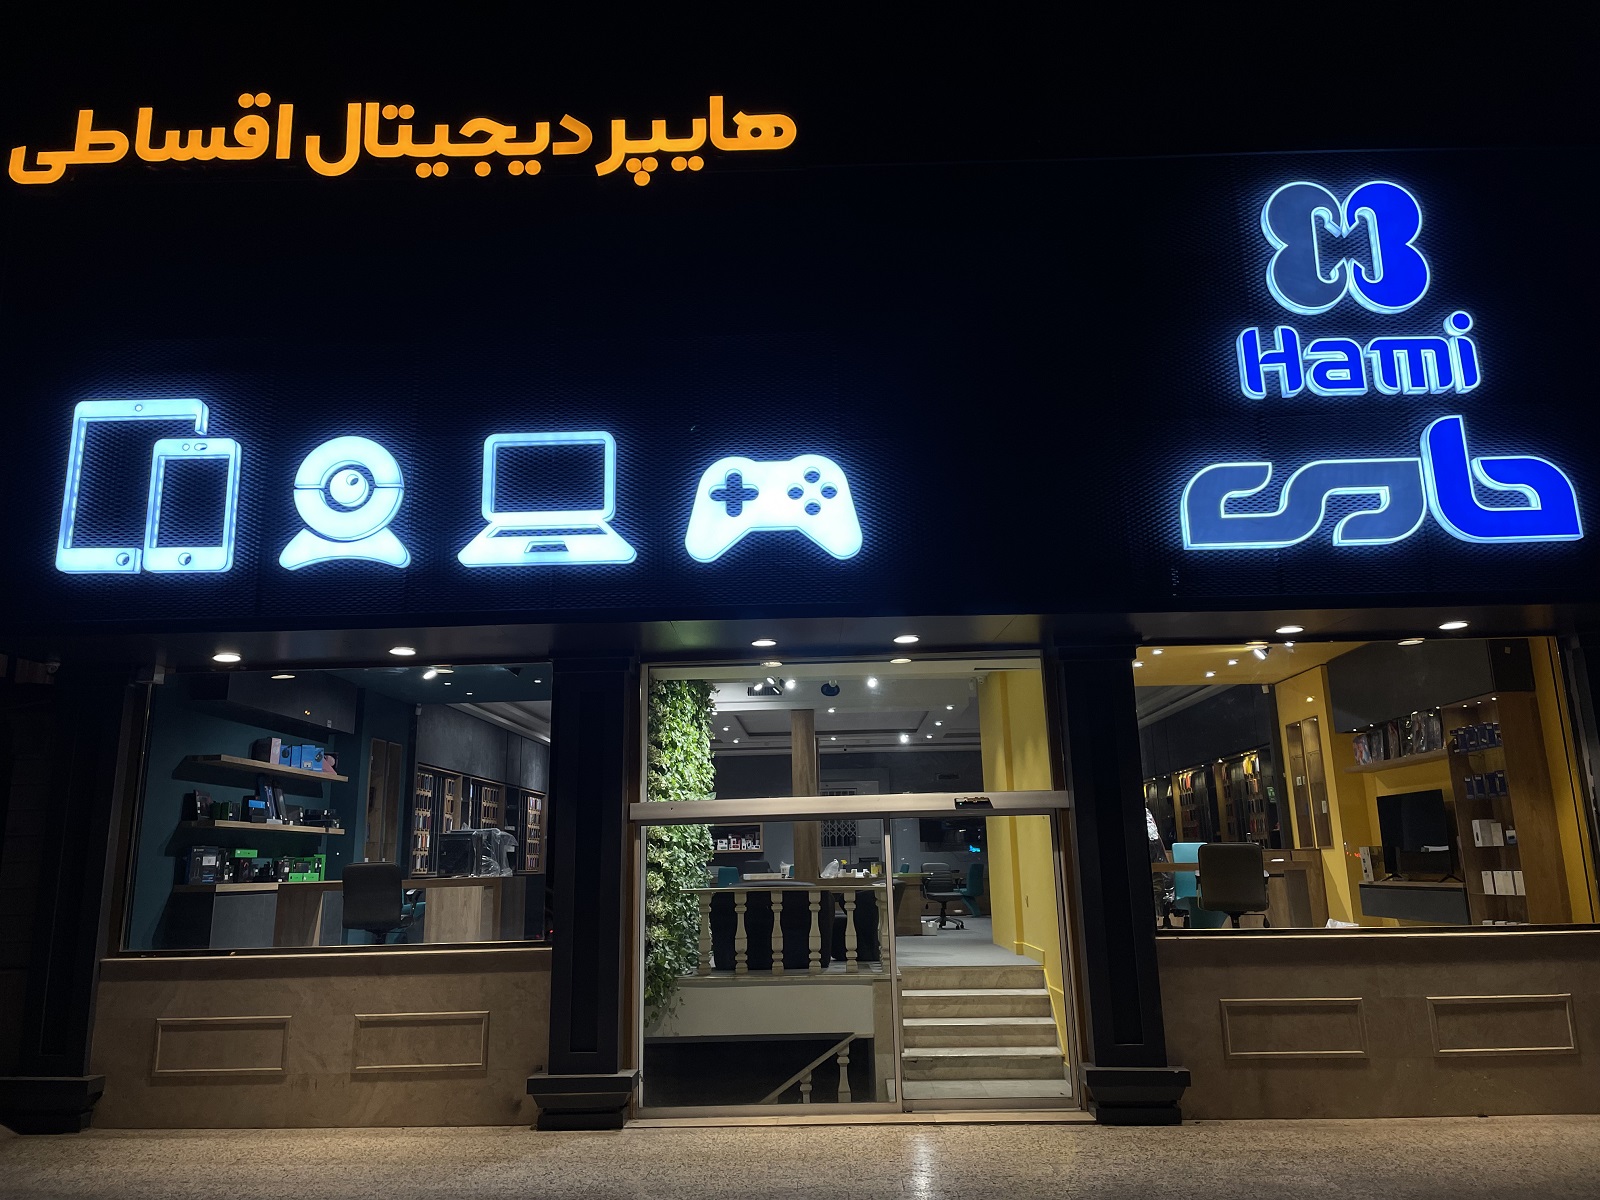 فروش انواع کالای دیجیتال اقساطی با بازپرداخت 12 ماهه در مشهد